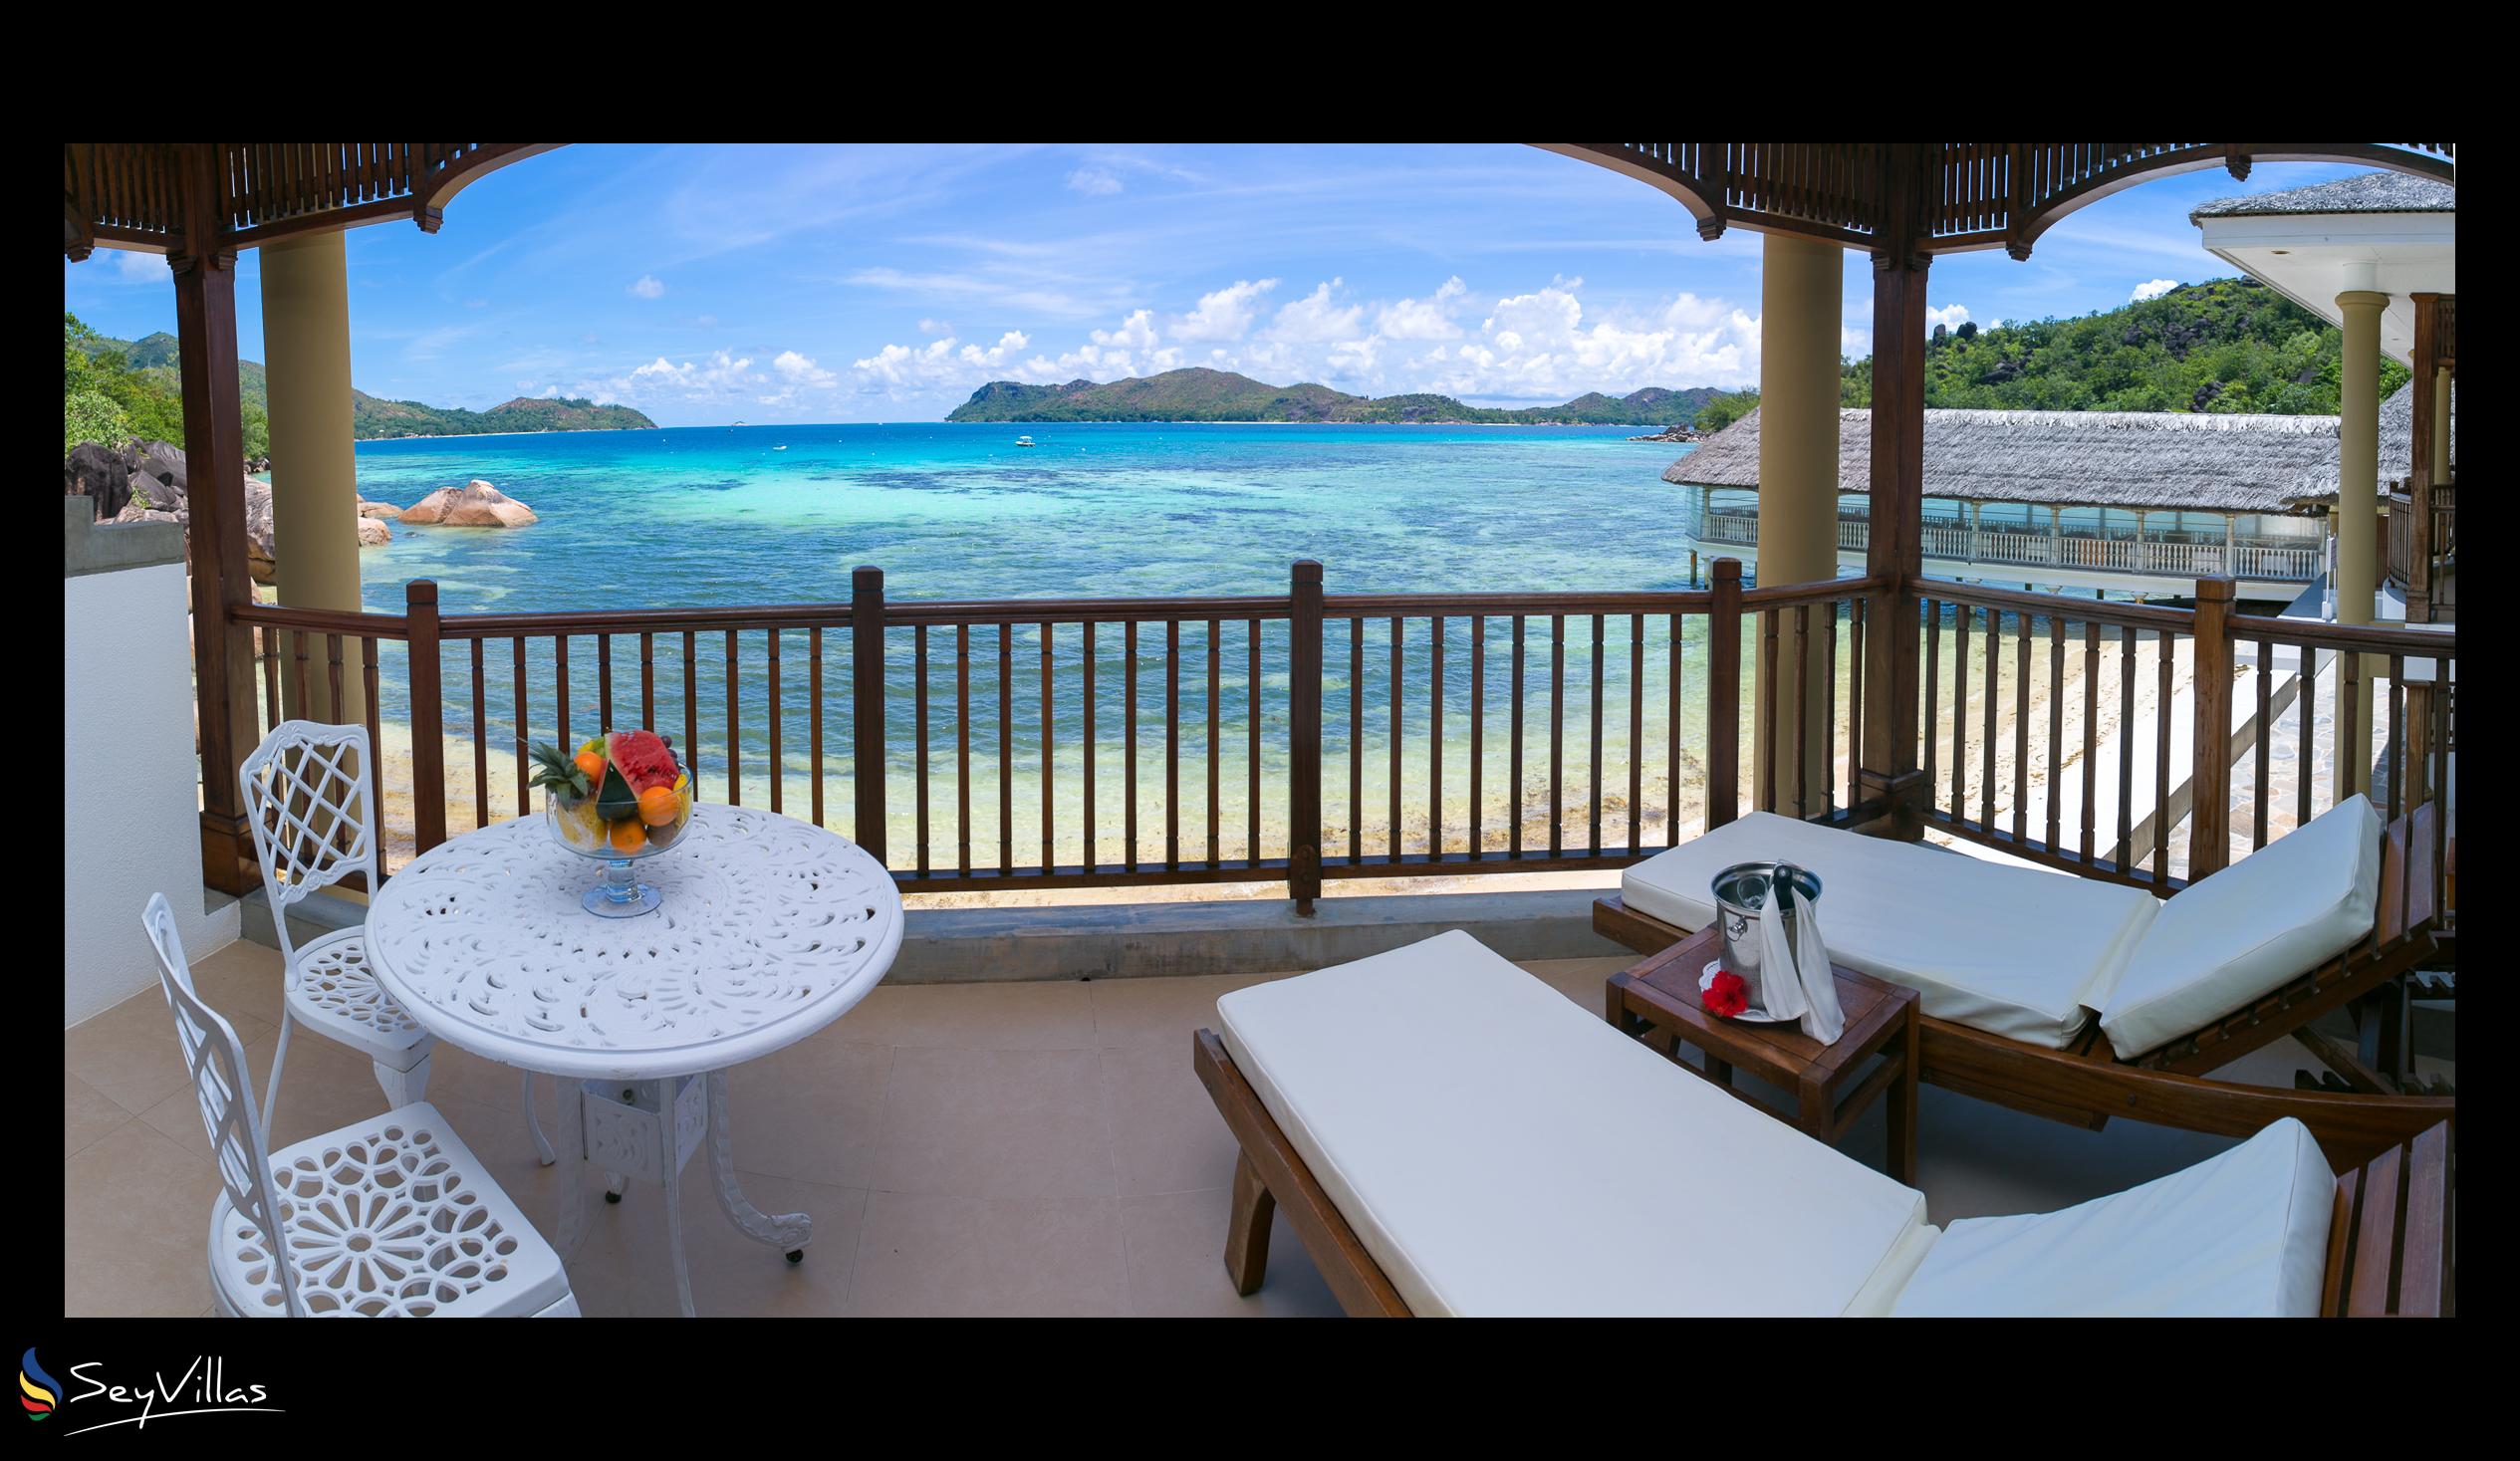 Photo 69: Le Domaine de La Reserve - Beach Front Family Suite - Praslin (Seychelles)